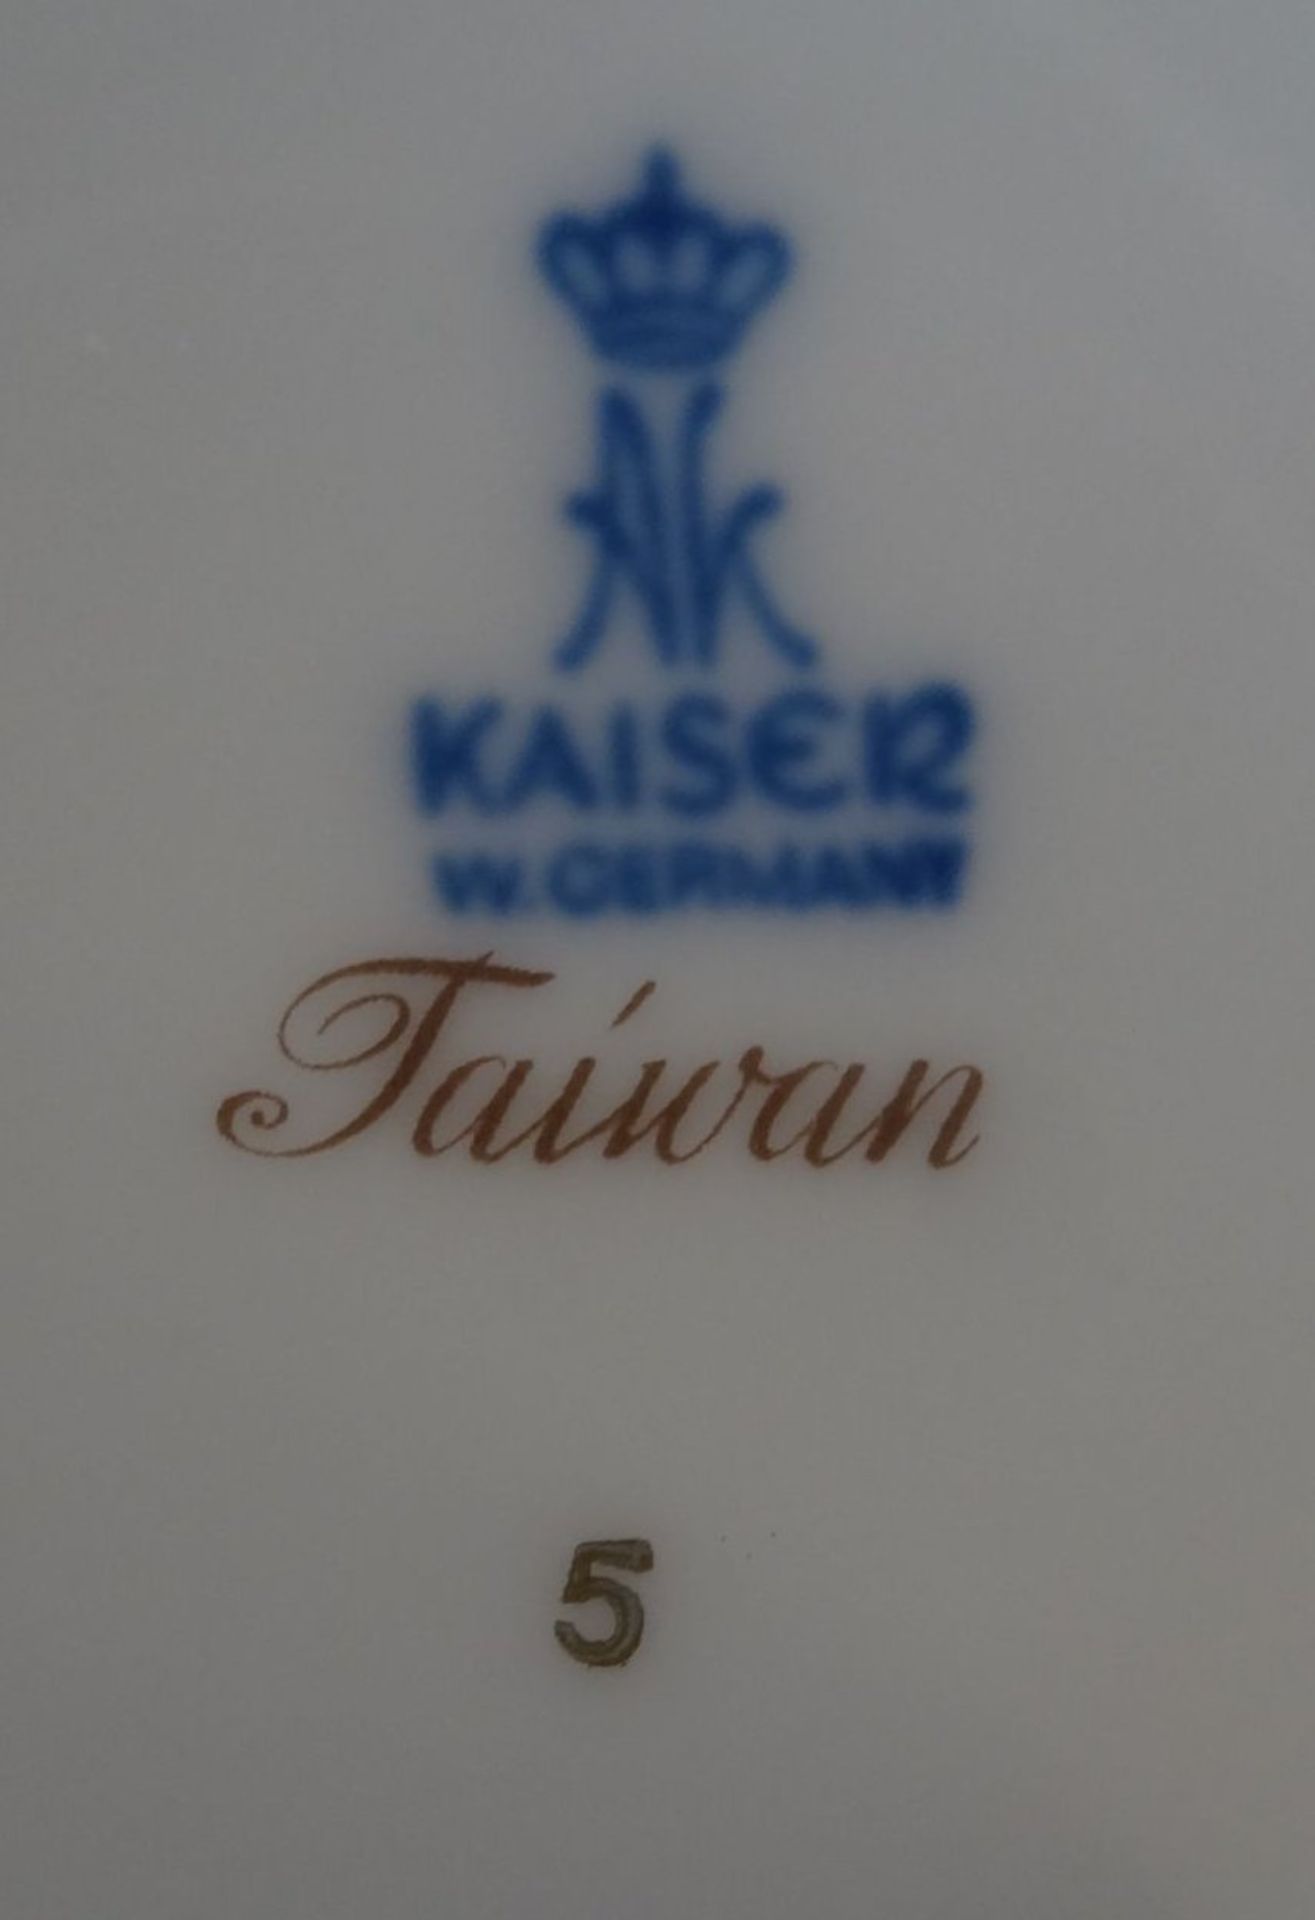 gr. Deckelvase "Kaiser" Dekor Taiwan, H-32cm - Bild 5 aus 5